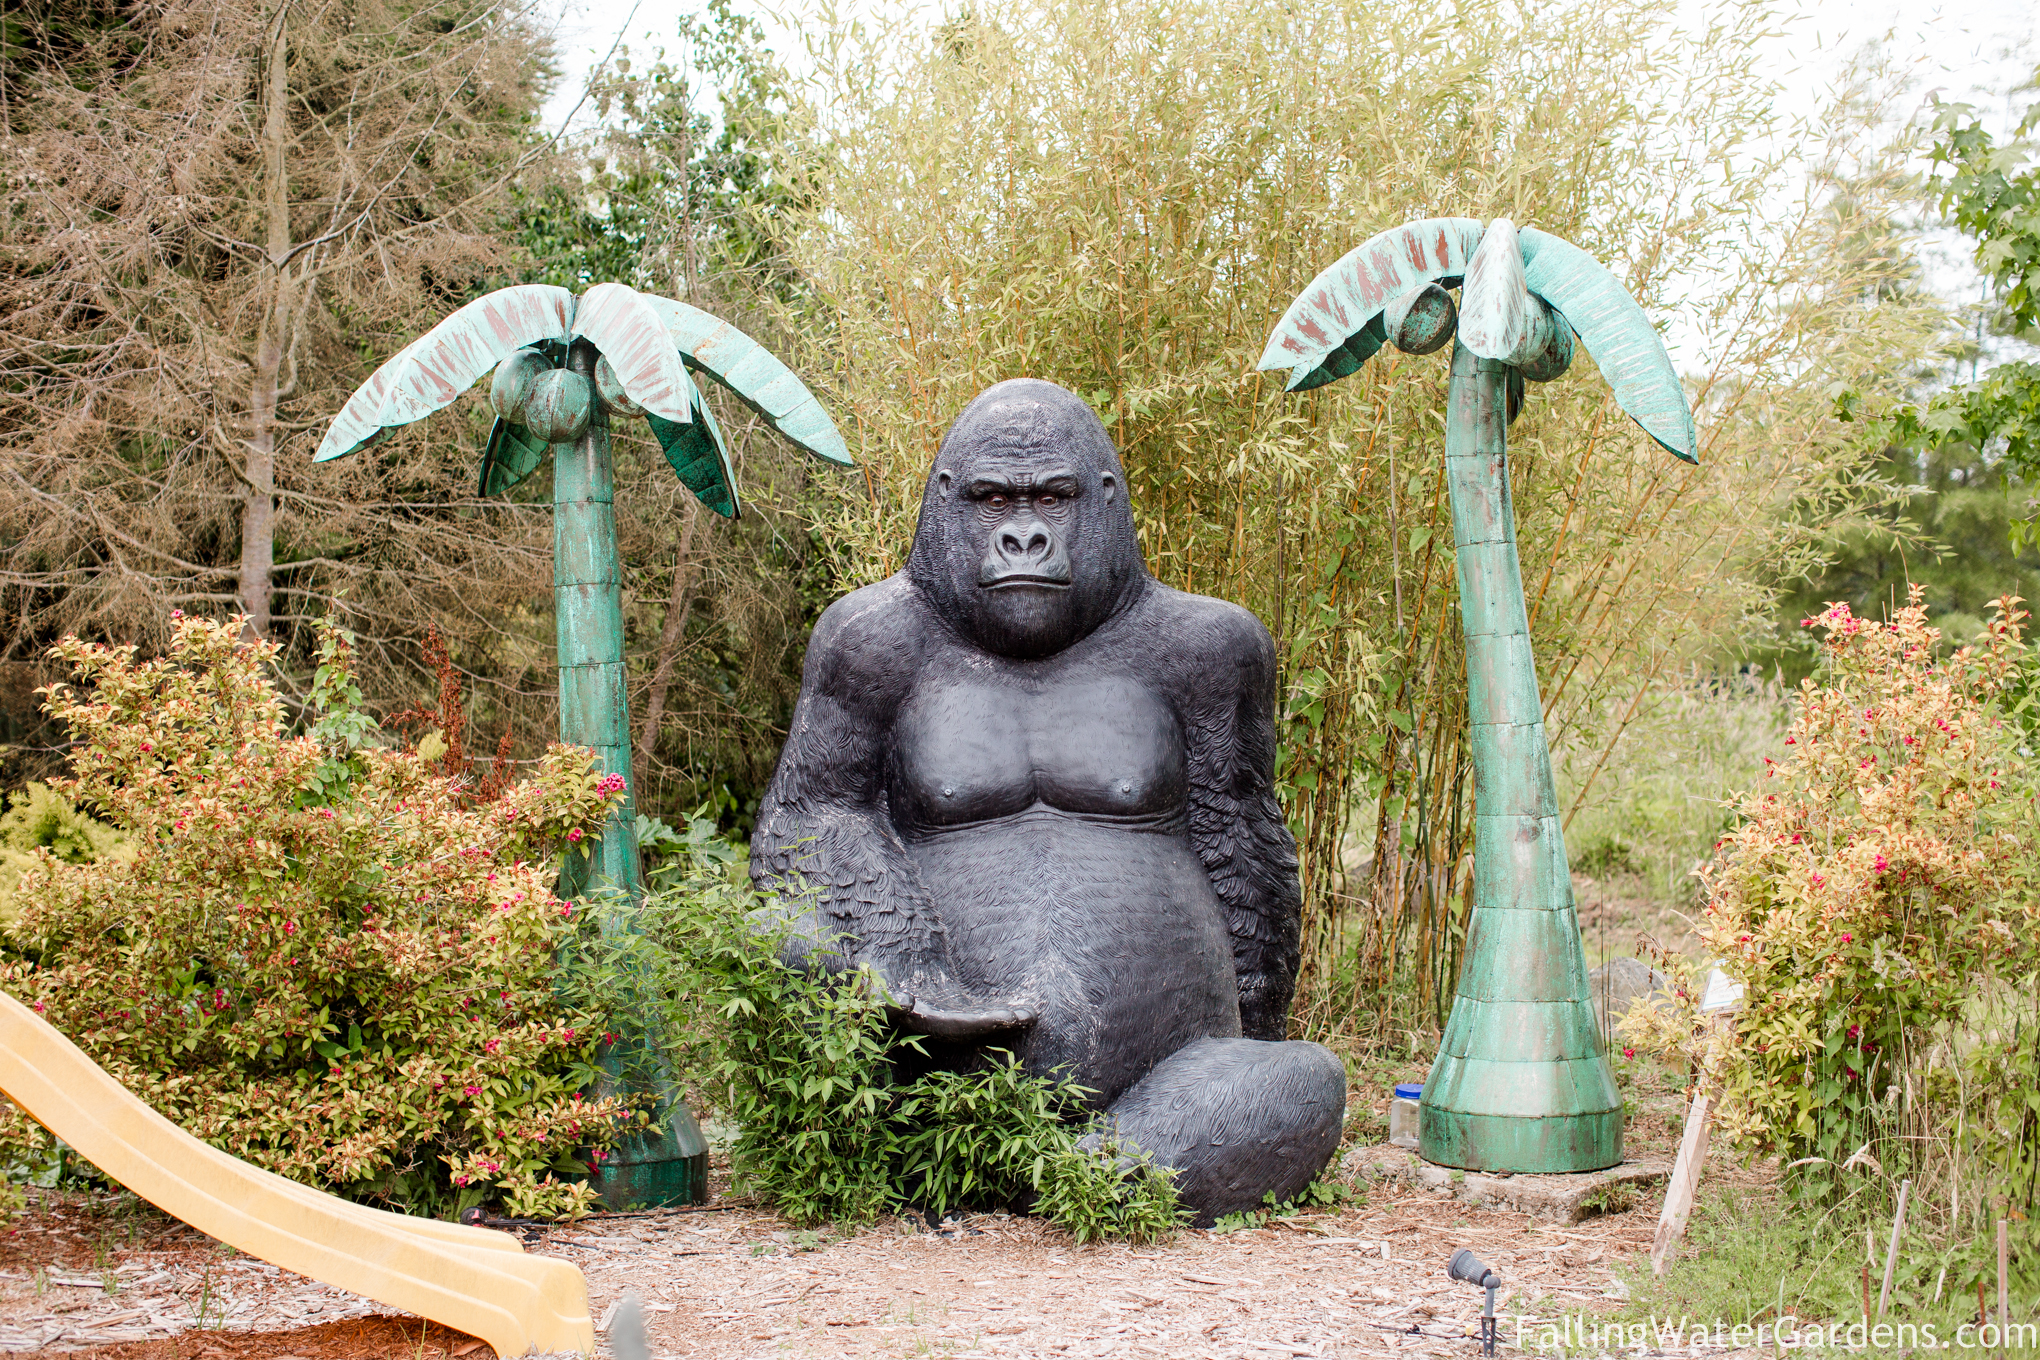 Giant Gorilla statue at Falling Water Gardens in Monroe Washington